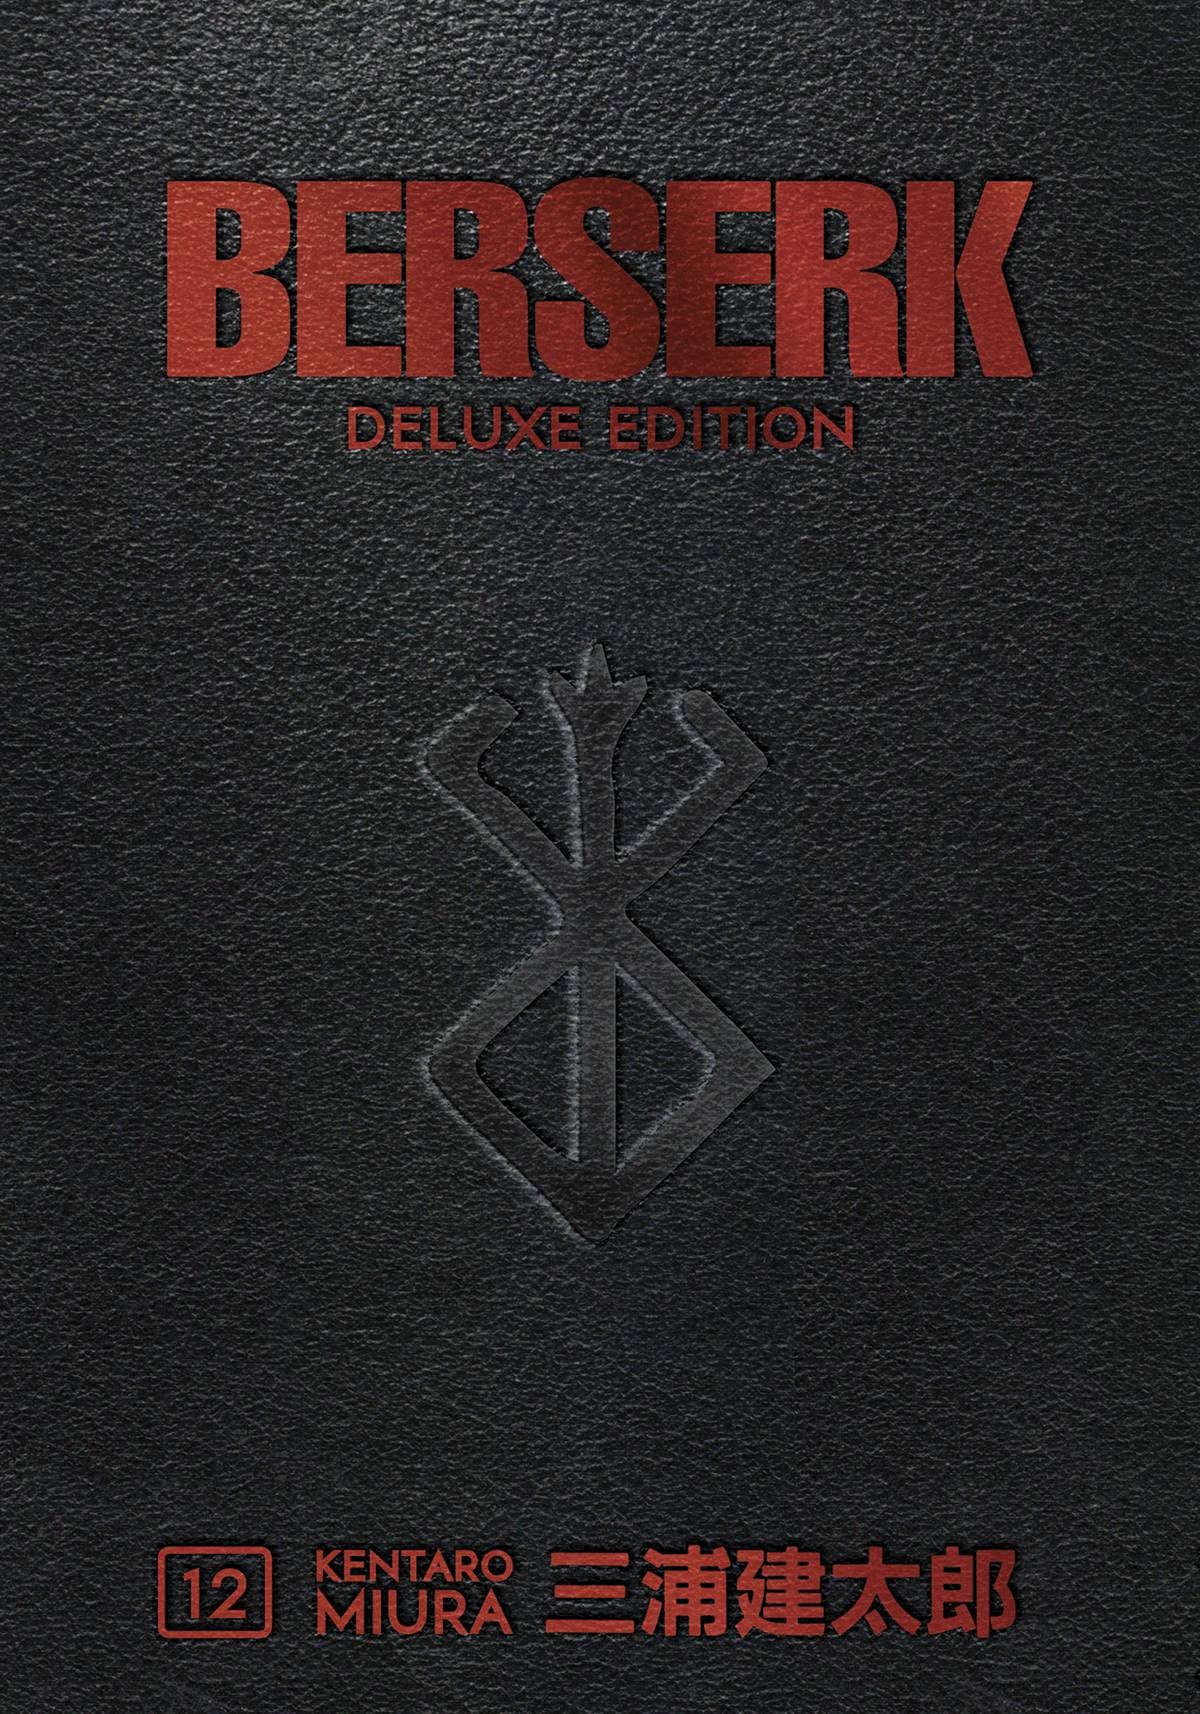 BERSERK DELUXE EDITION VOLUME 12 HC